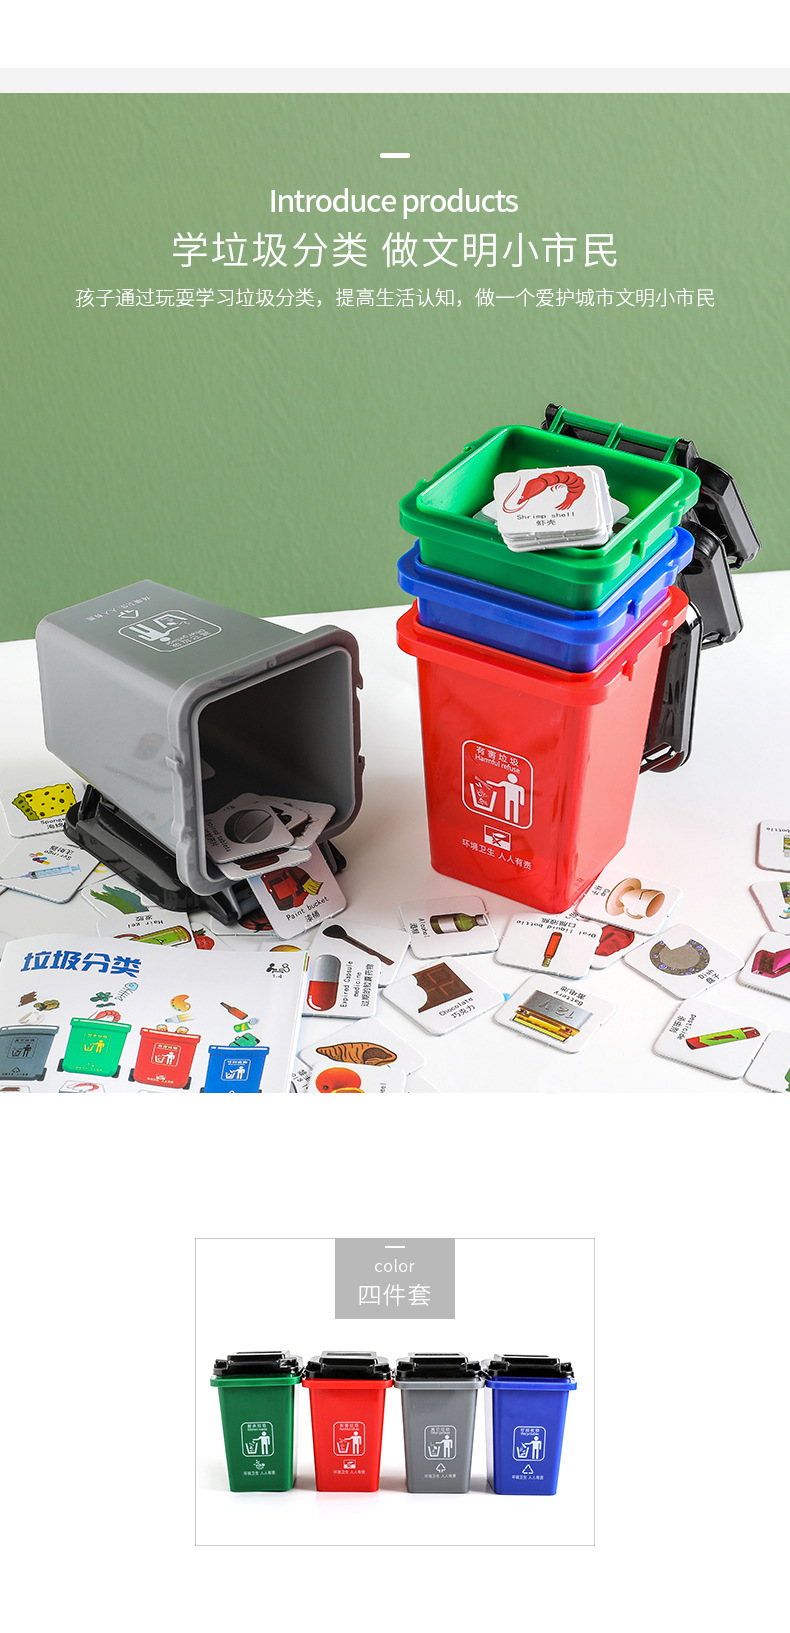 2558垃圾分類教具抖音同款腦力垃圾分類玩具兒童早教益智垃圾桶